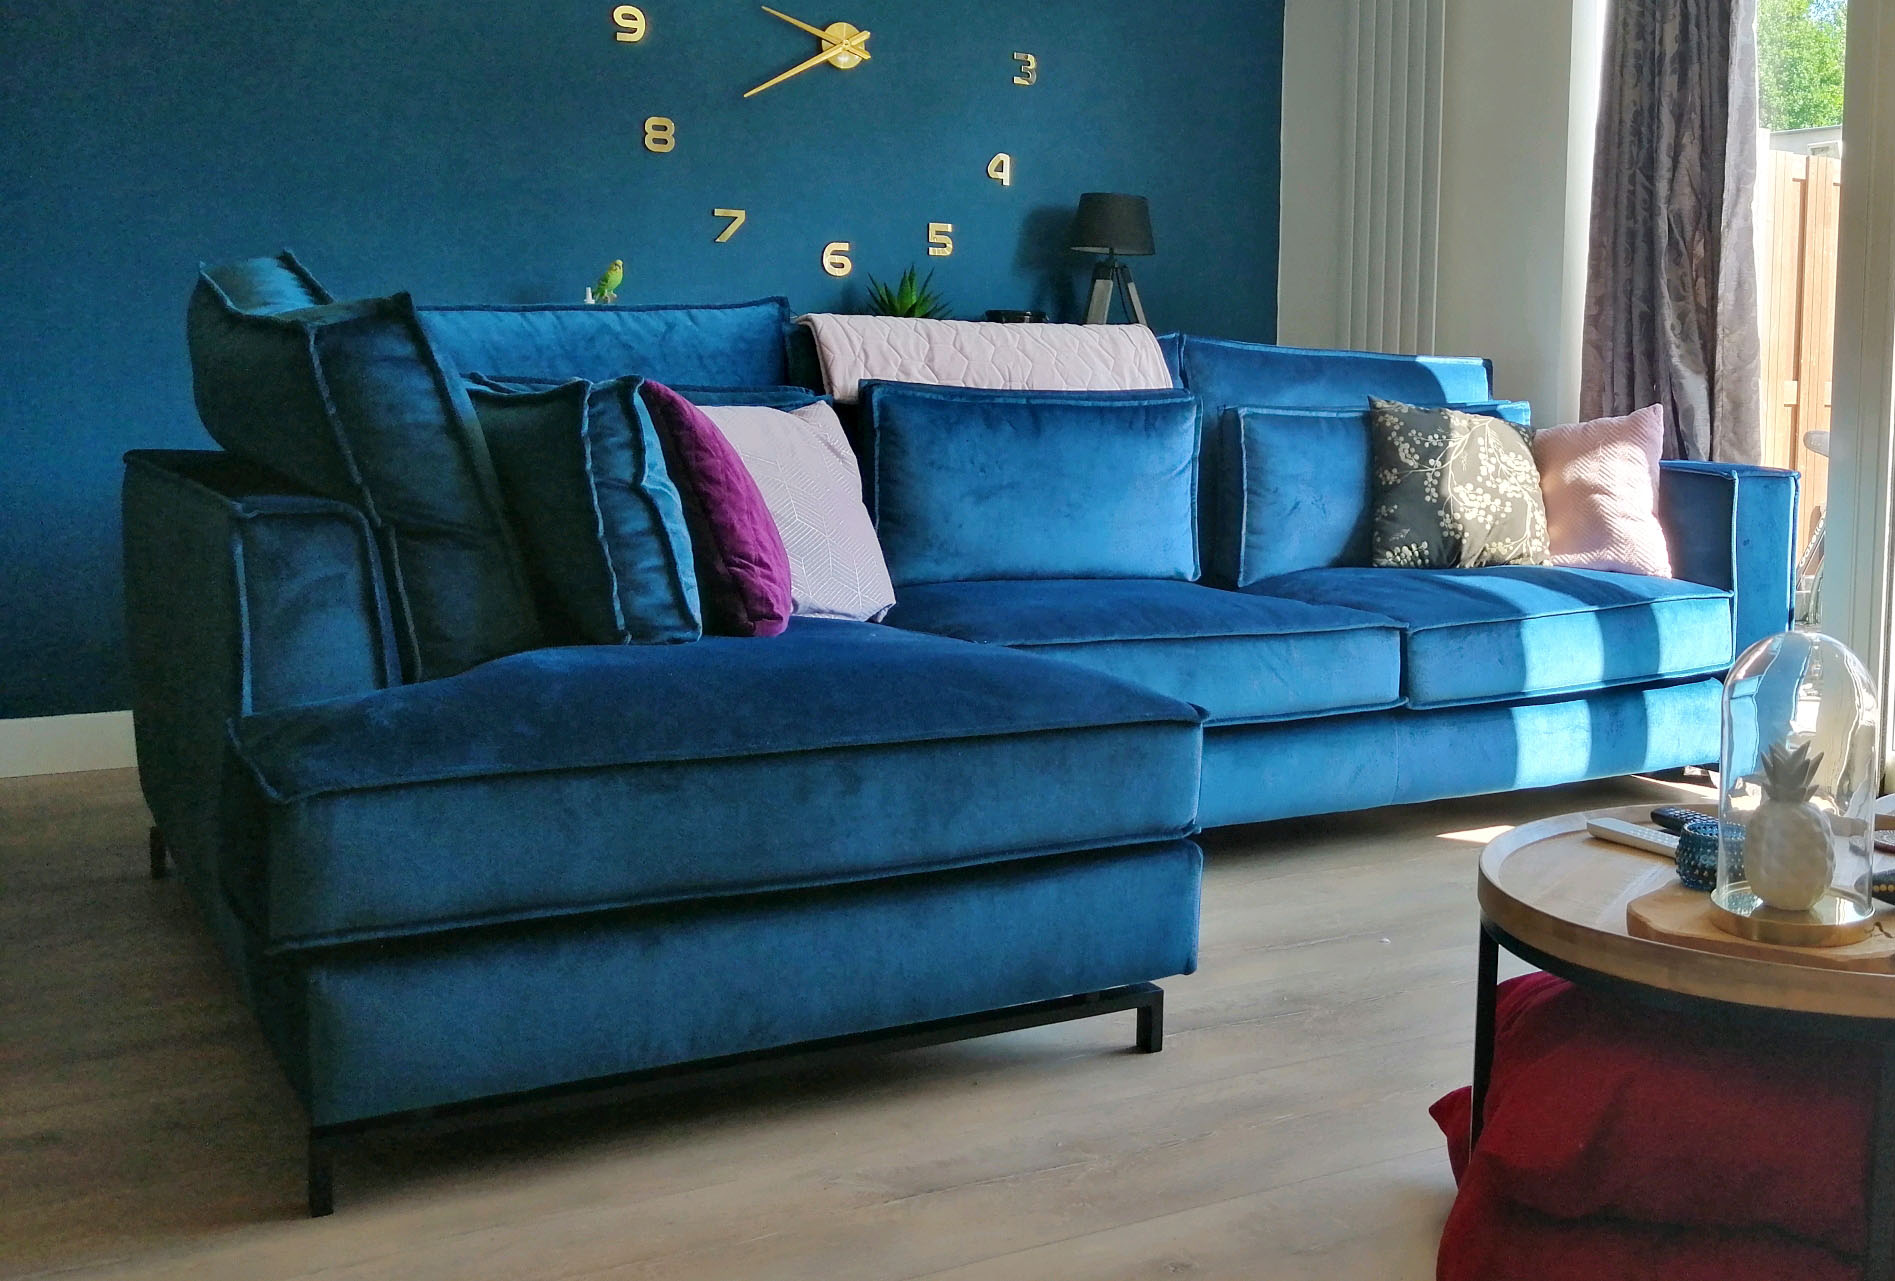 Mooie blauwe loungebank in een velvet stof die heerlijk comfortabel zit